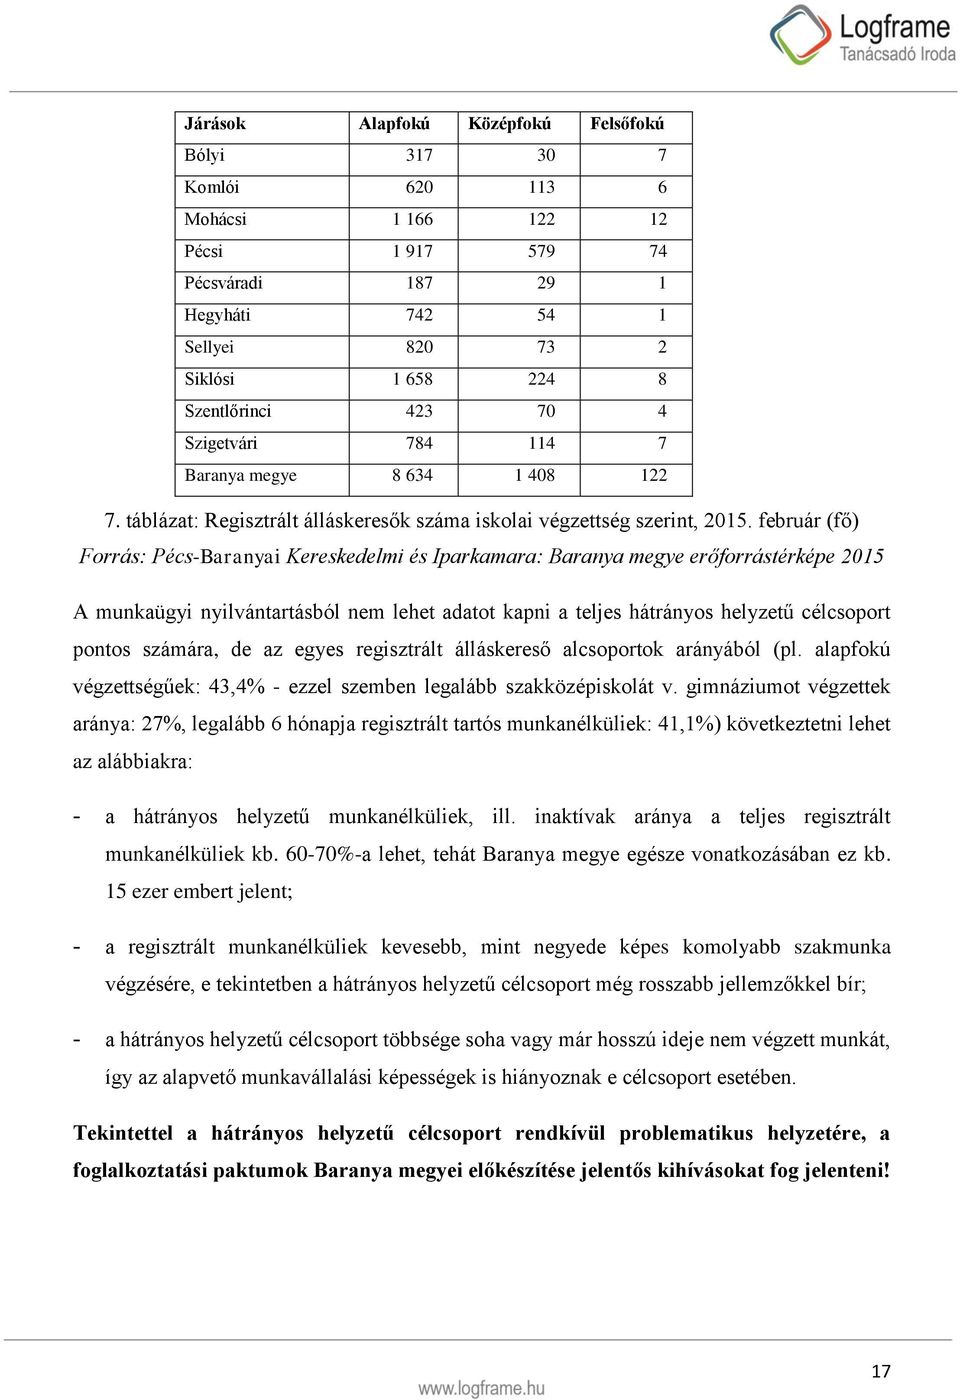 február (fő) Forrás: Pécs-Baranyai Kereskedelmi és Iparkamara: Baranya megye erőforrástérképe 2015 A munkaügyi nyilvántartásból nem lehet adatot kapni a teljes hátrányos helyzetű célcsoport pontos